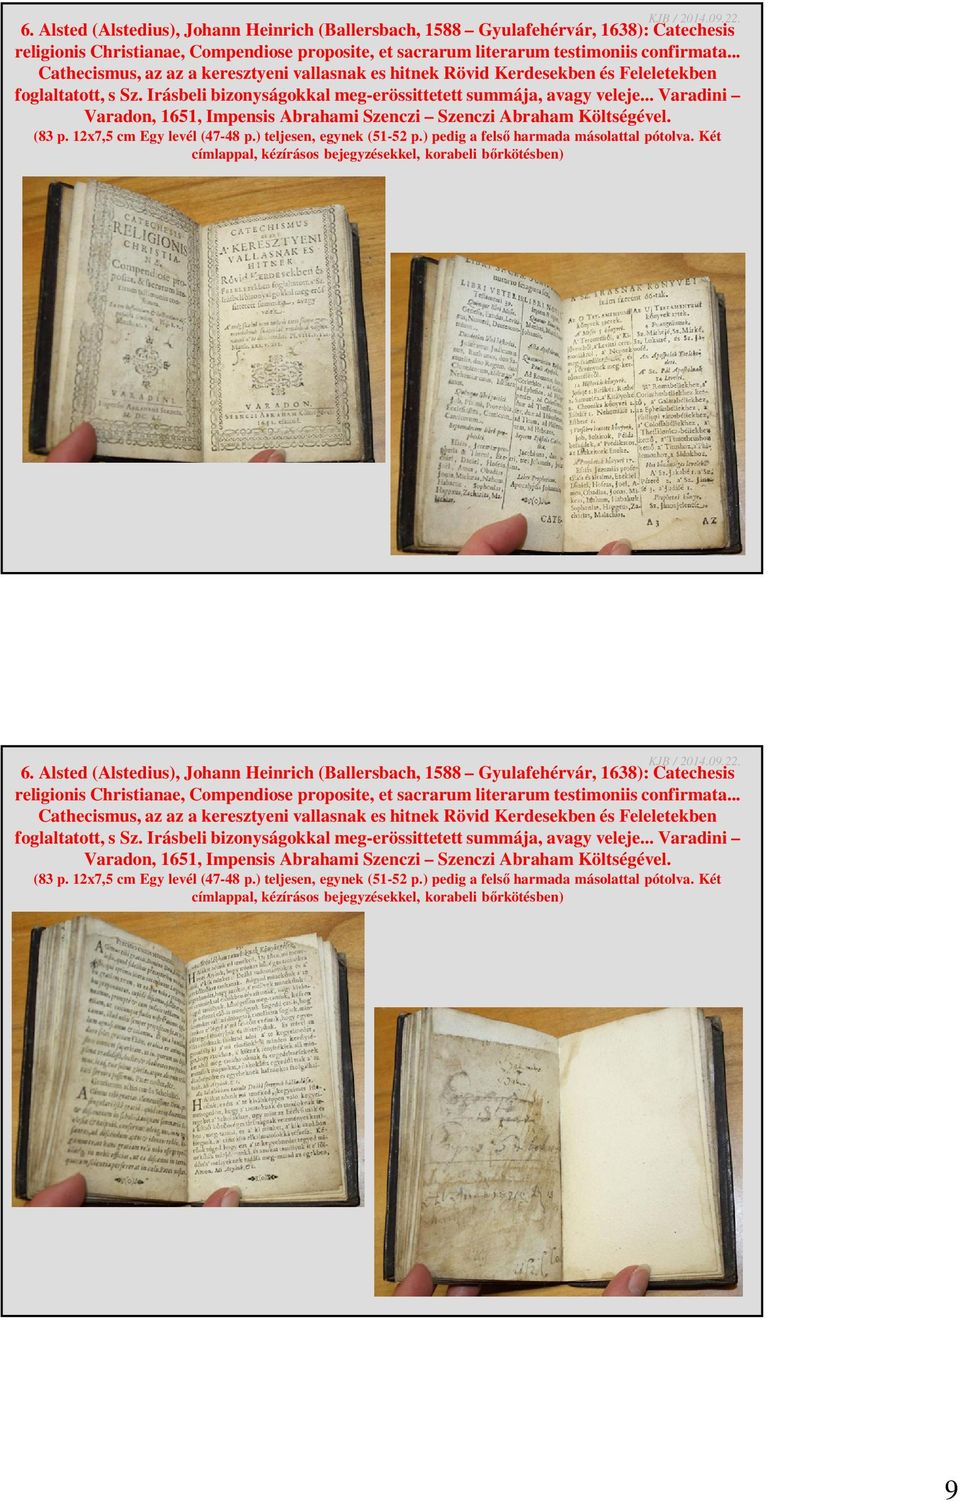 .. Varadini Varadon, 1651, Impensis Abrahami Szenczi Szenczi Abraham Költségével. (83 p. 12x7,5 cm Egy levél (47-48 p.) teljesen, egynek (51-52 p.) pedig a felső harmada másolattal pótolva.